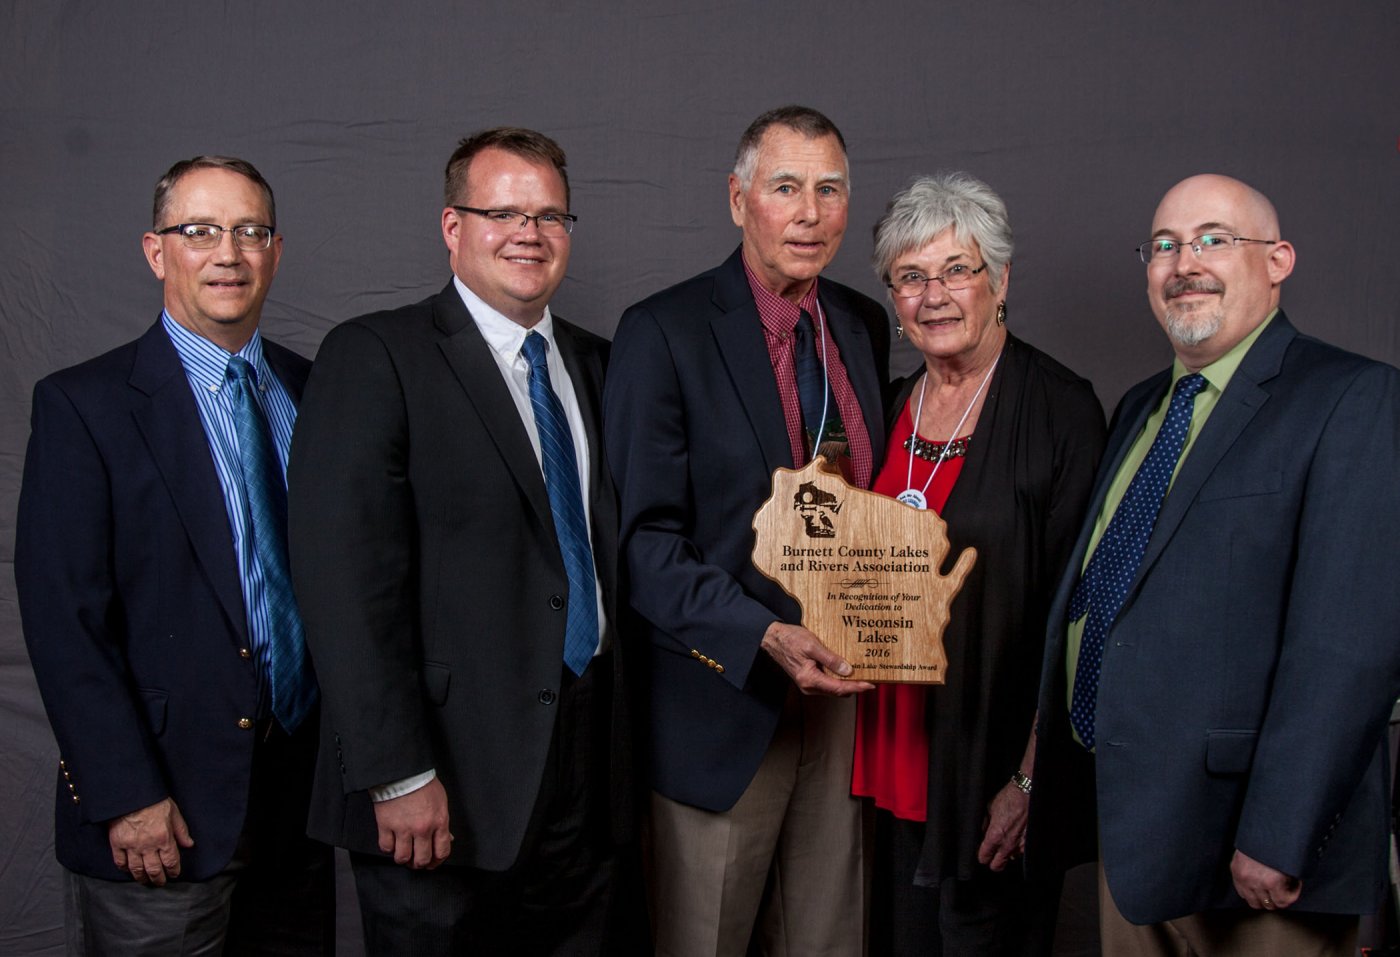 2016 Award winner Burnett County Lakes & Rivers